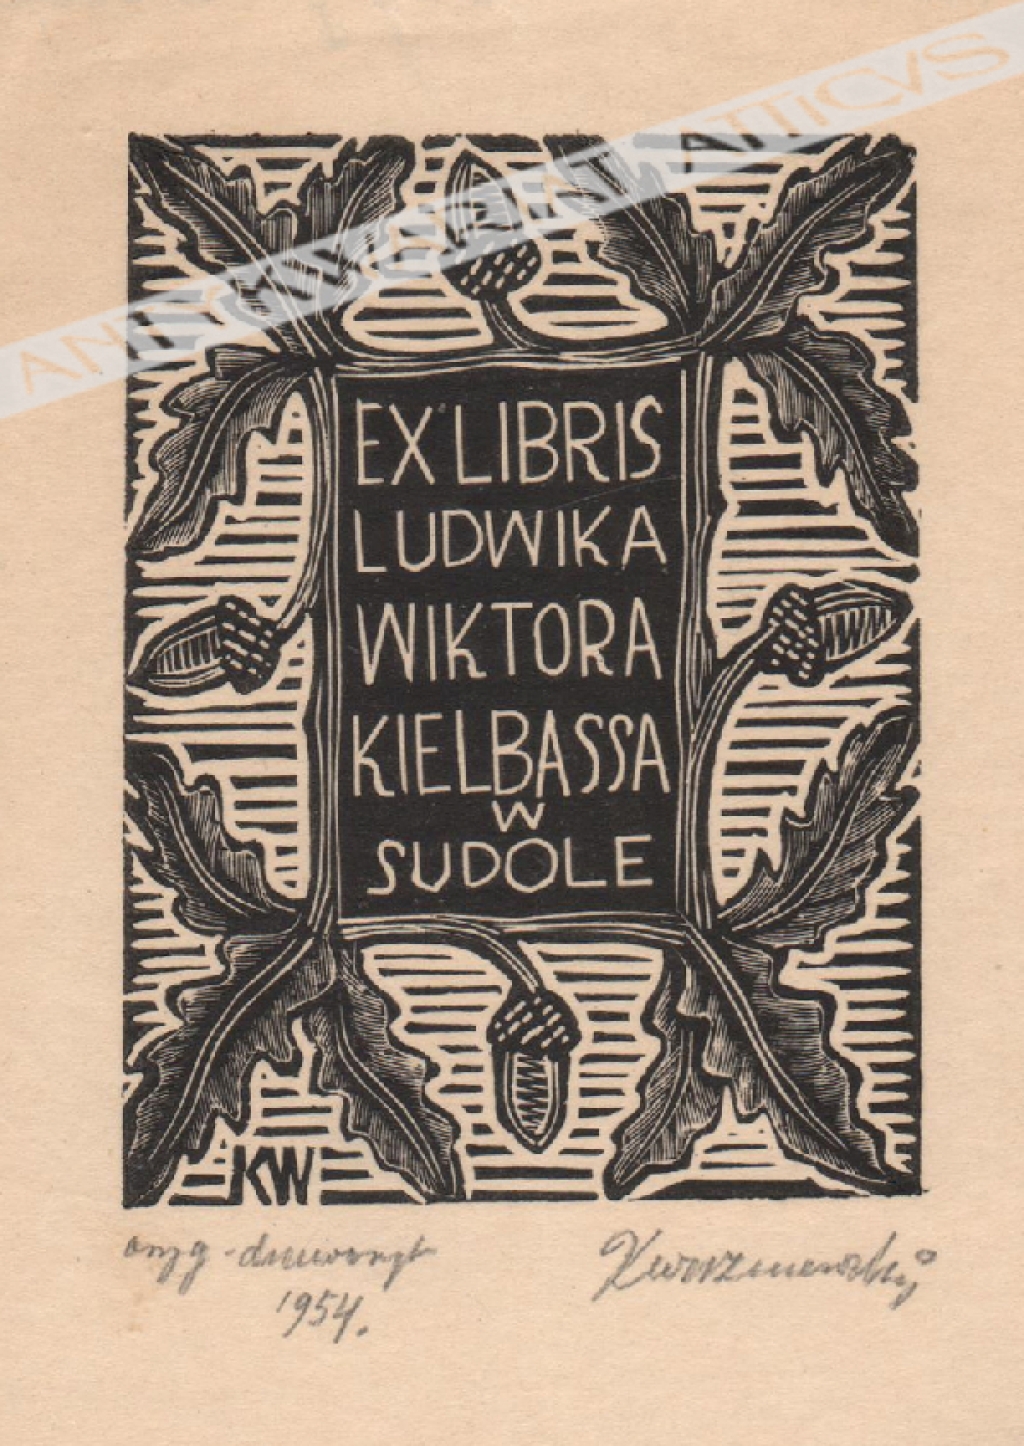 Ex libris Ludwika Wiktora Kielbassa w Sudole